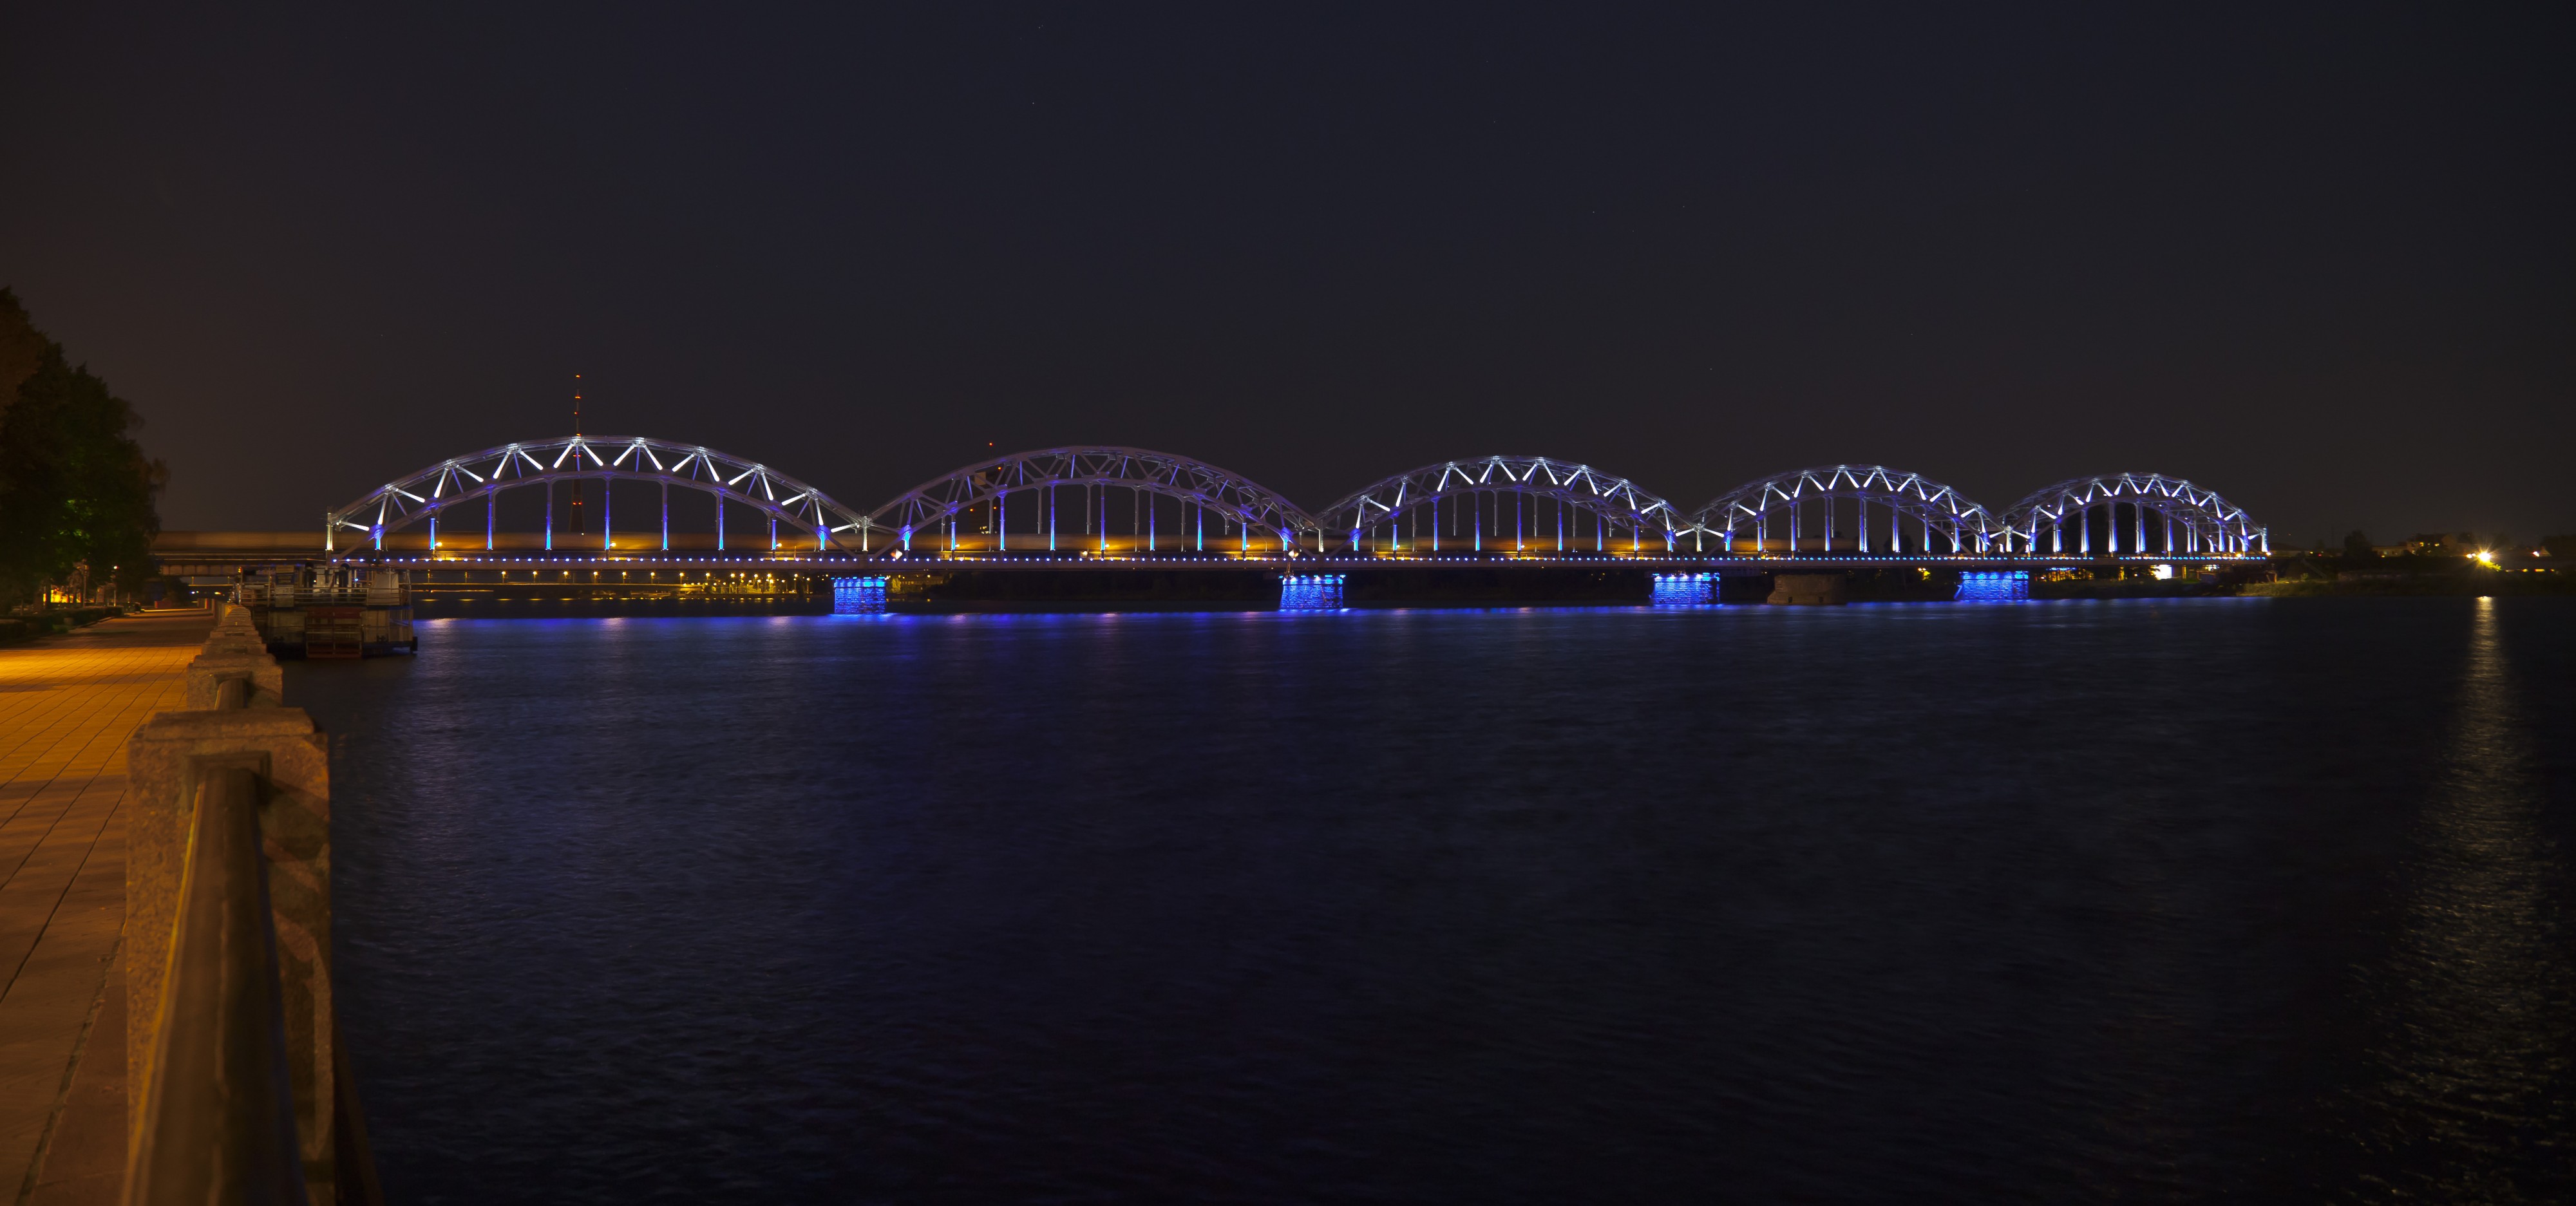 Puente del Ferrocarril, Riga, Letonia, 2012-08-07, DD 08